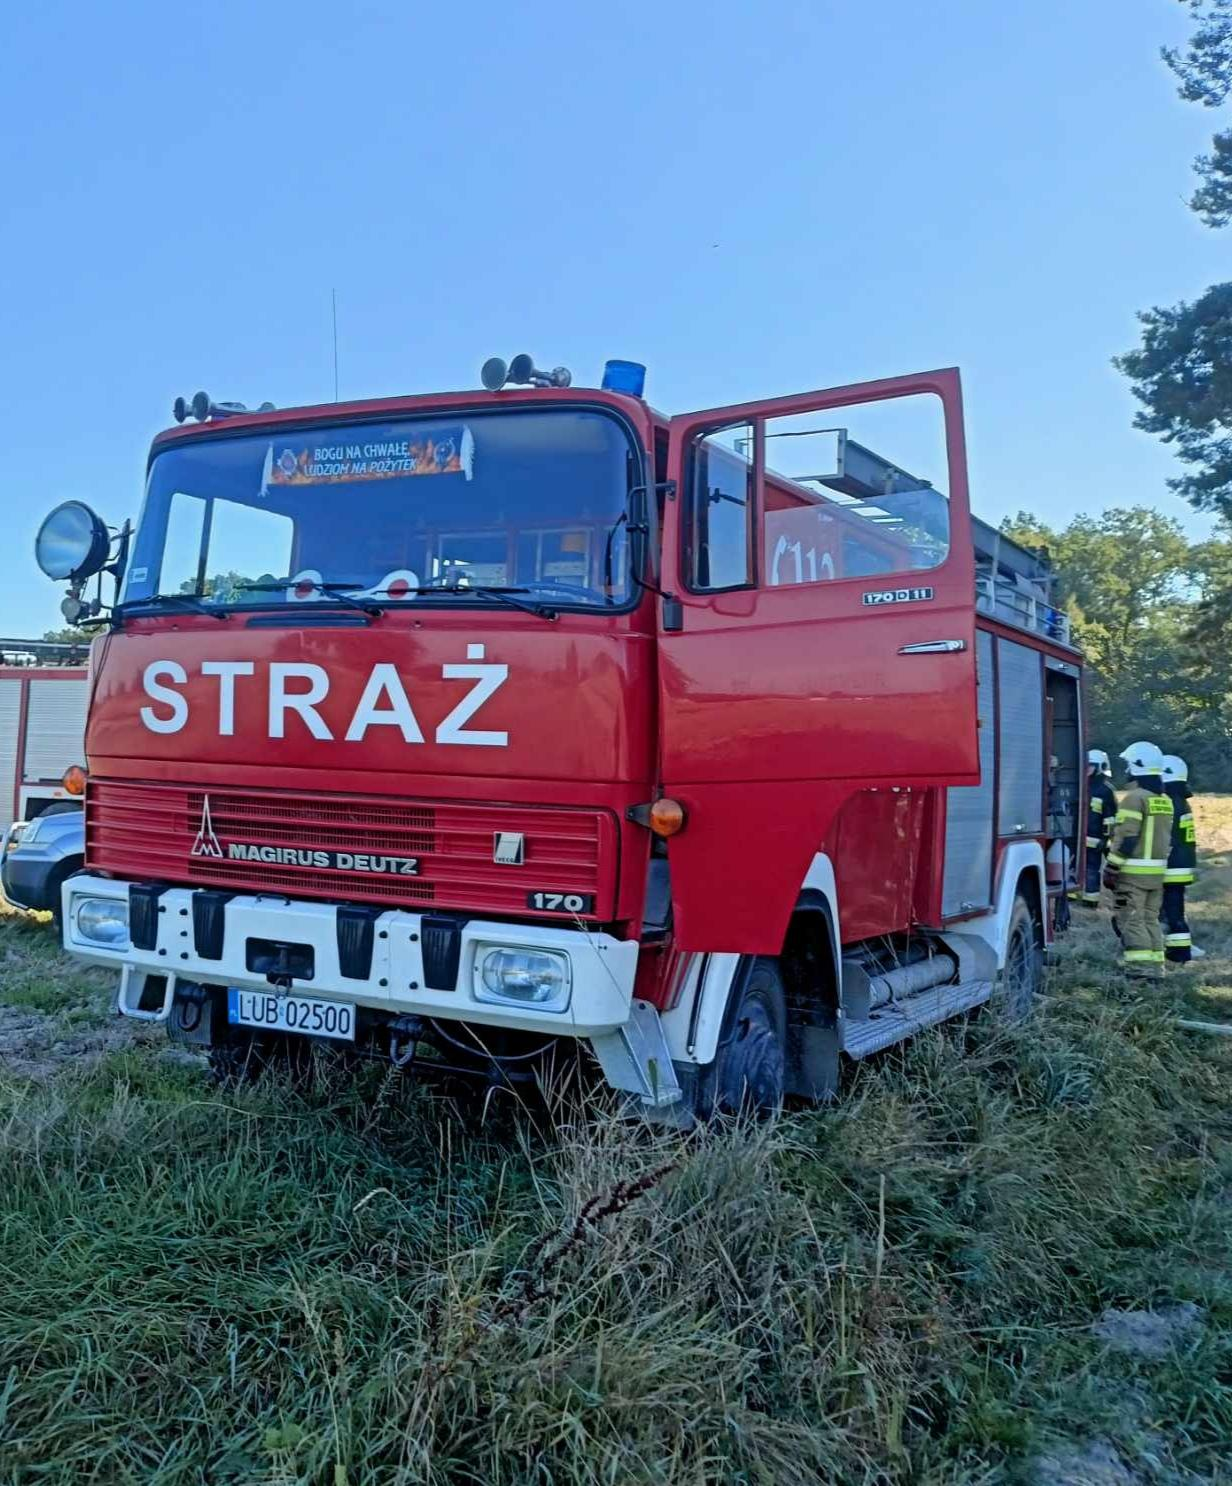 Czerwony wóz strażacki Magirus Deutz stojący na trawiastym terenie z widocznymi strażakami w tle.